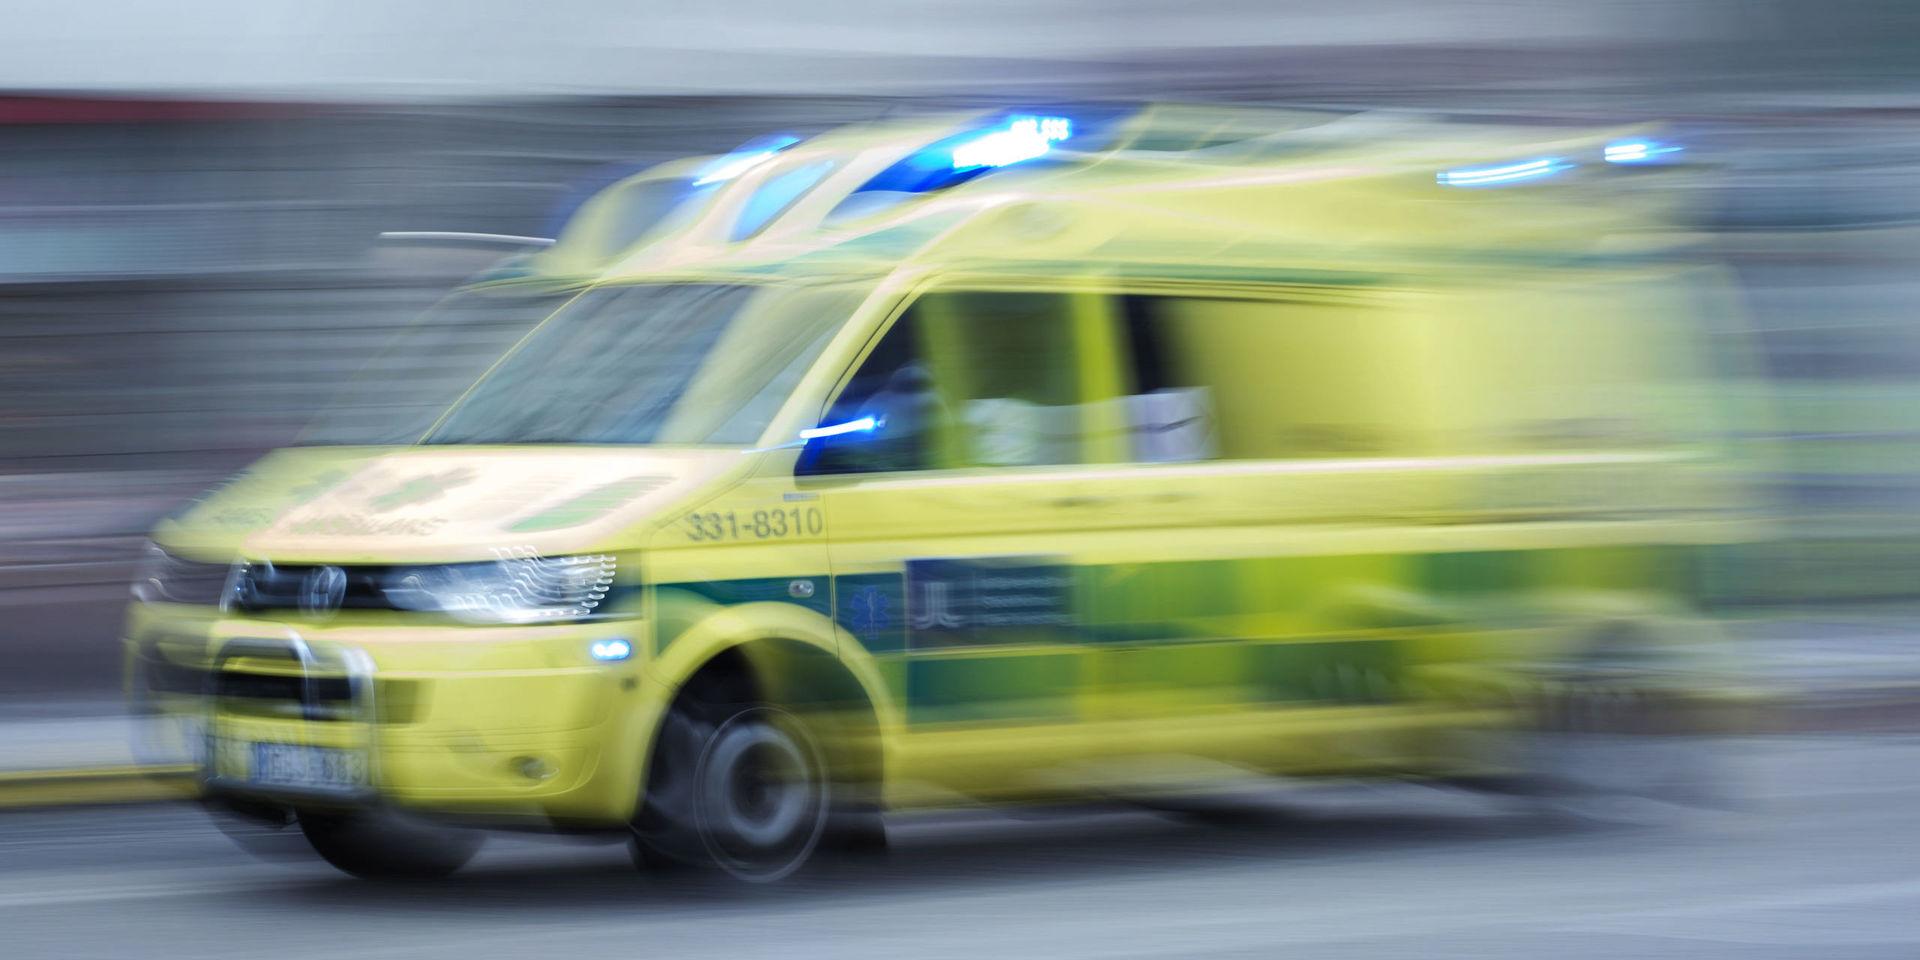 En man avled efter ett fall från hög höjd på en byggarbetsplats i Västerås. Arkivbild.